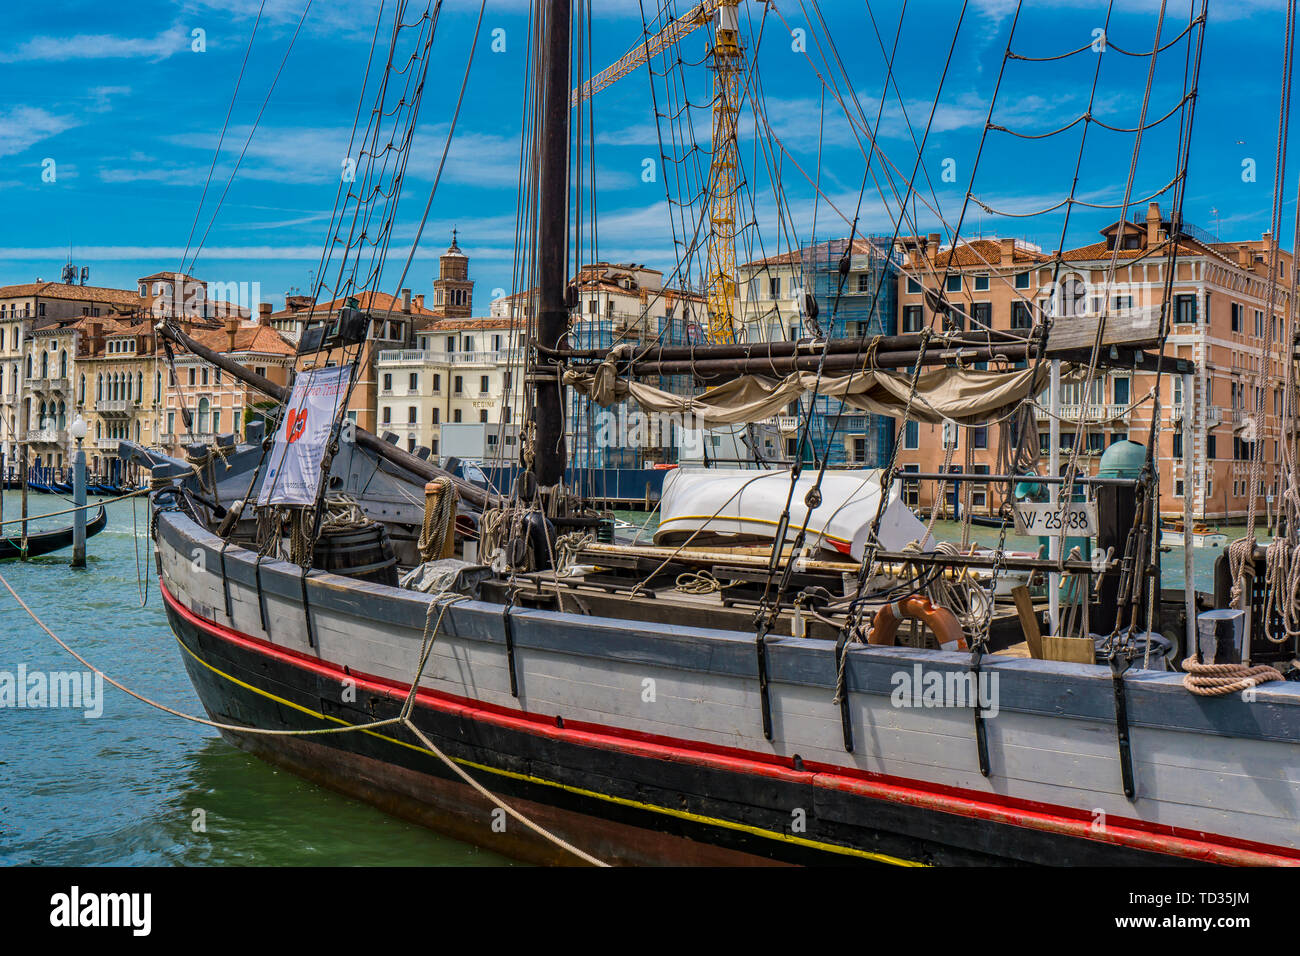 Venise, Italie - 26 MAI 2019 : vue sur Il Nuovo Trionfo, dernier navire à voile trabaccolo à Venise, Italie. Bateau a été construit par Ferdinando Ubalducci Banque D'Images